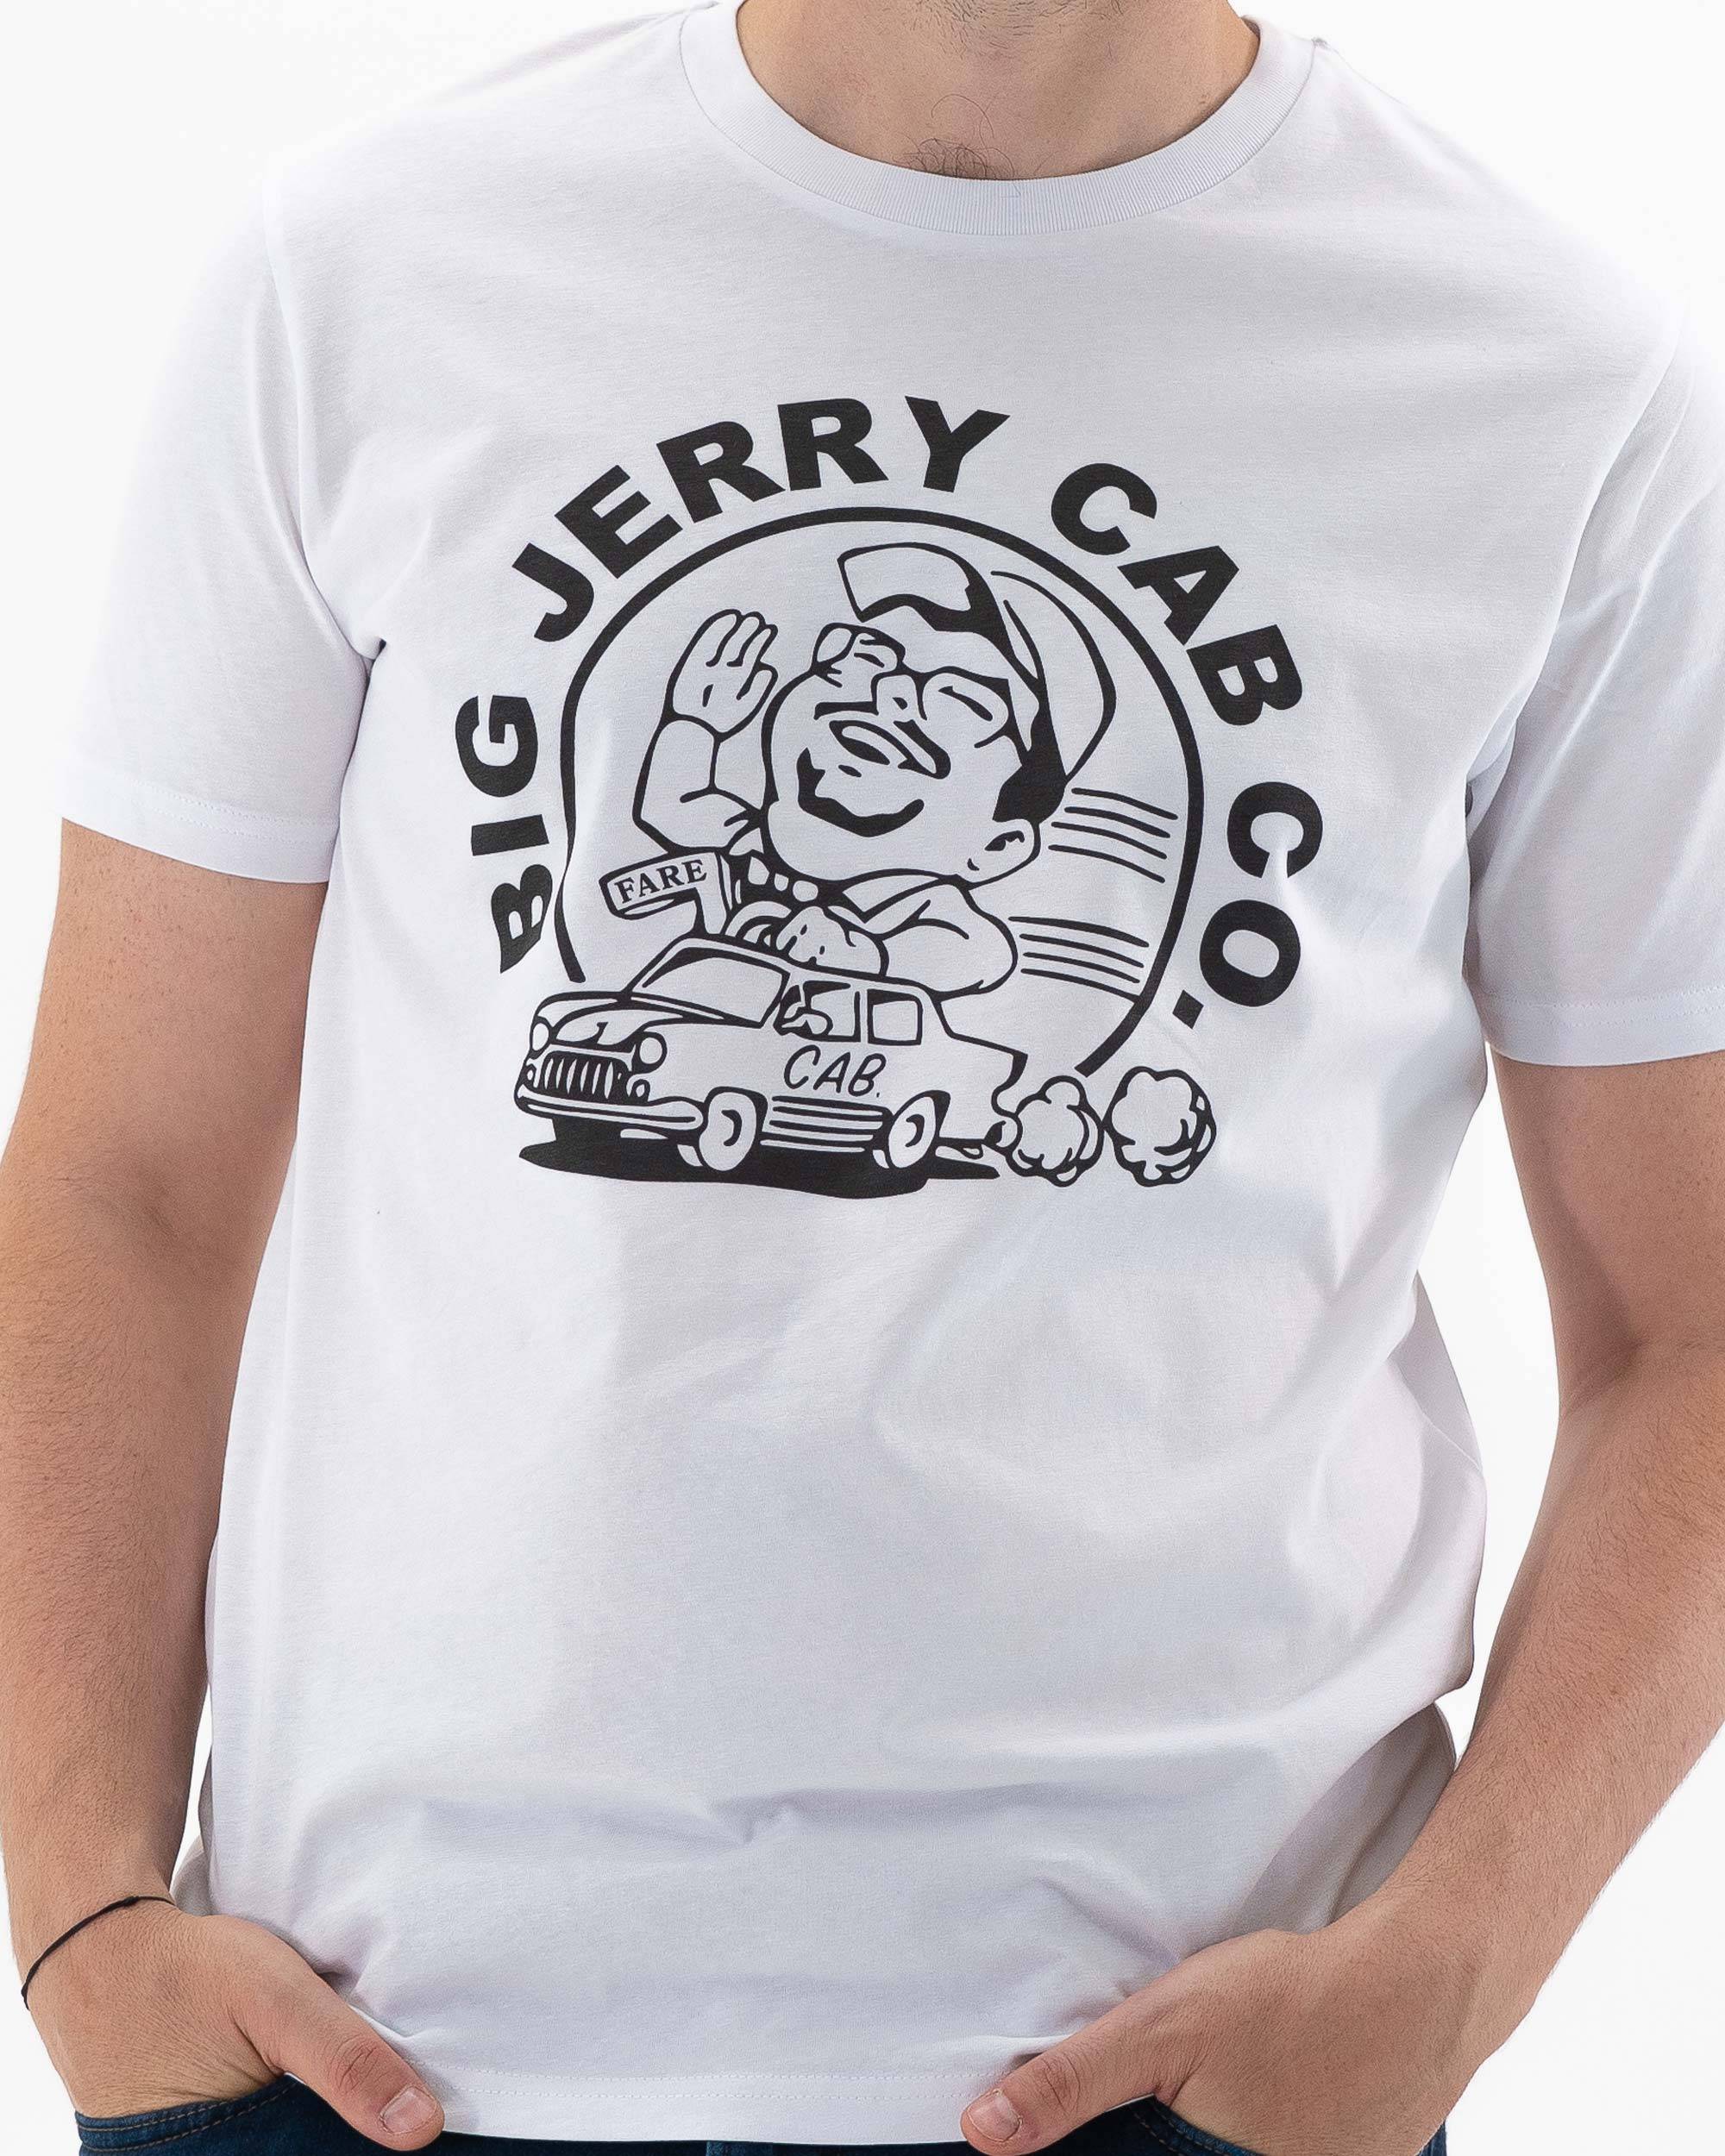 T-shirt Big Jerry Cab Co. de couleur Blanc